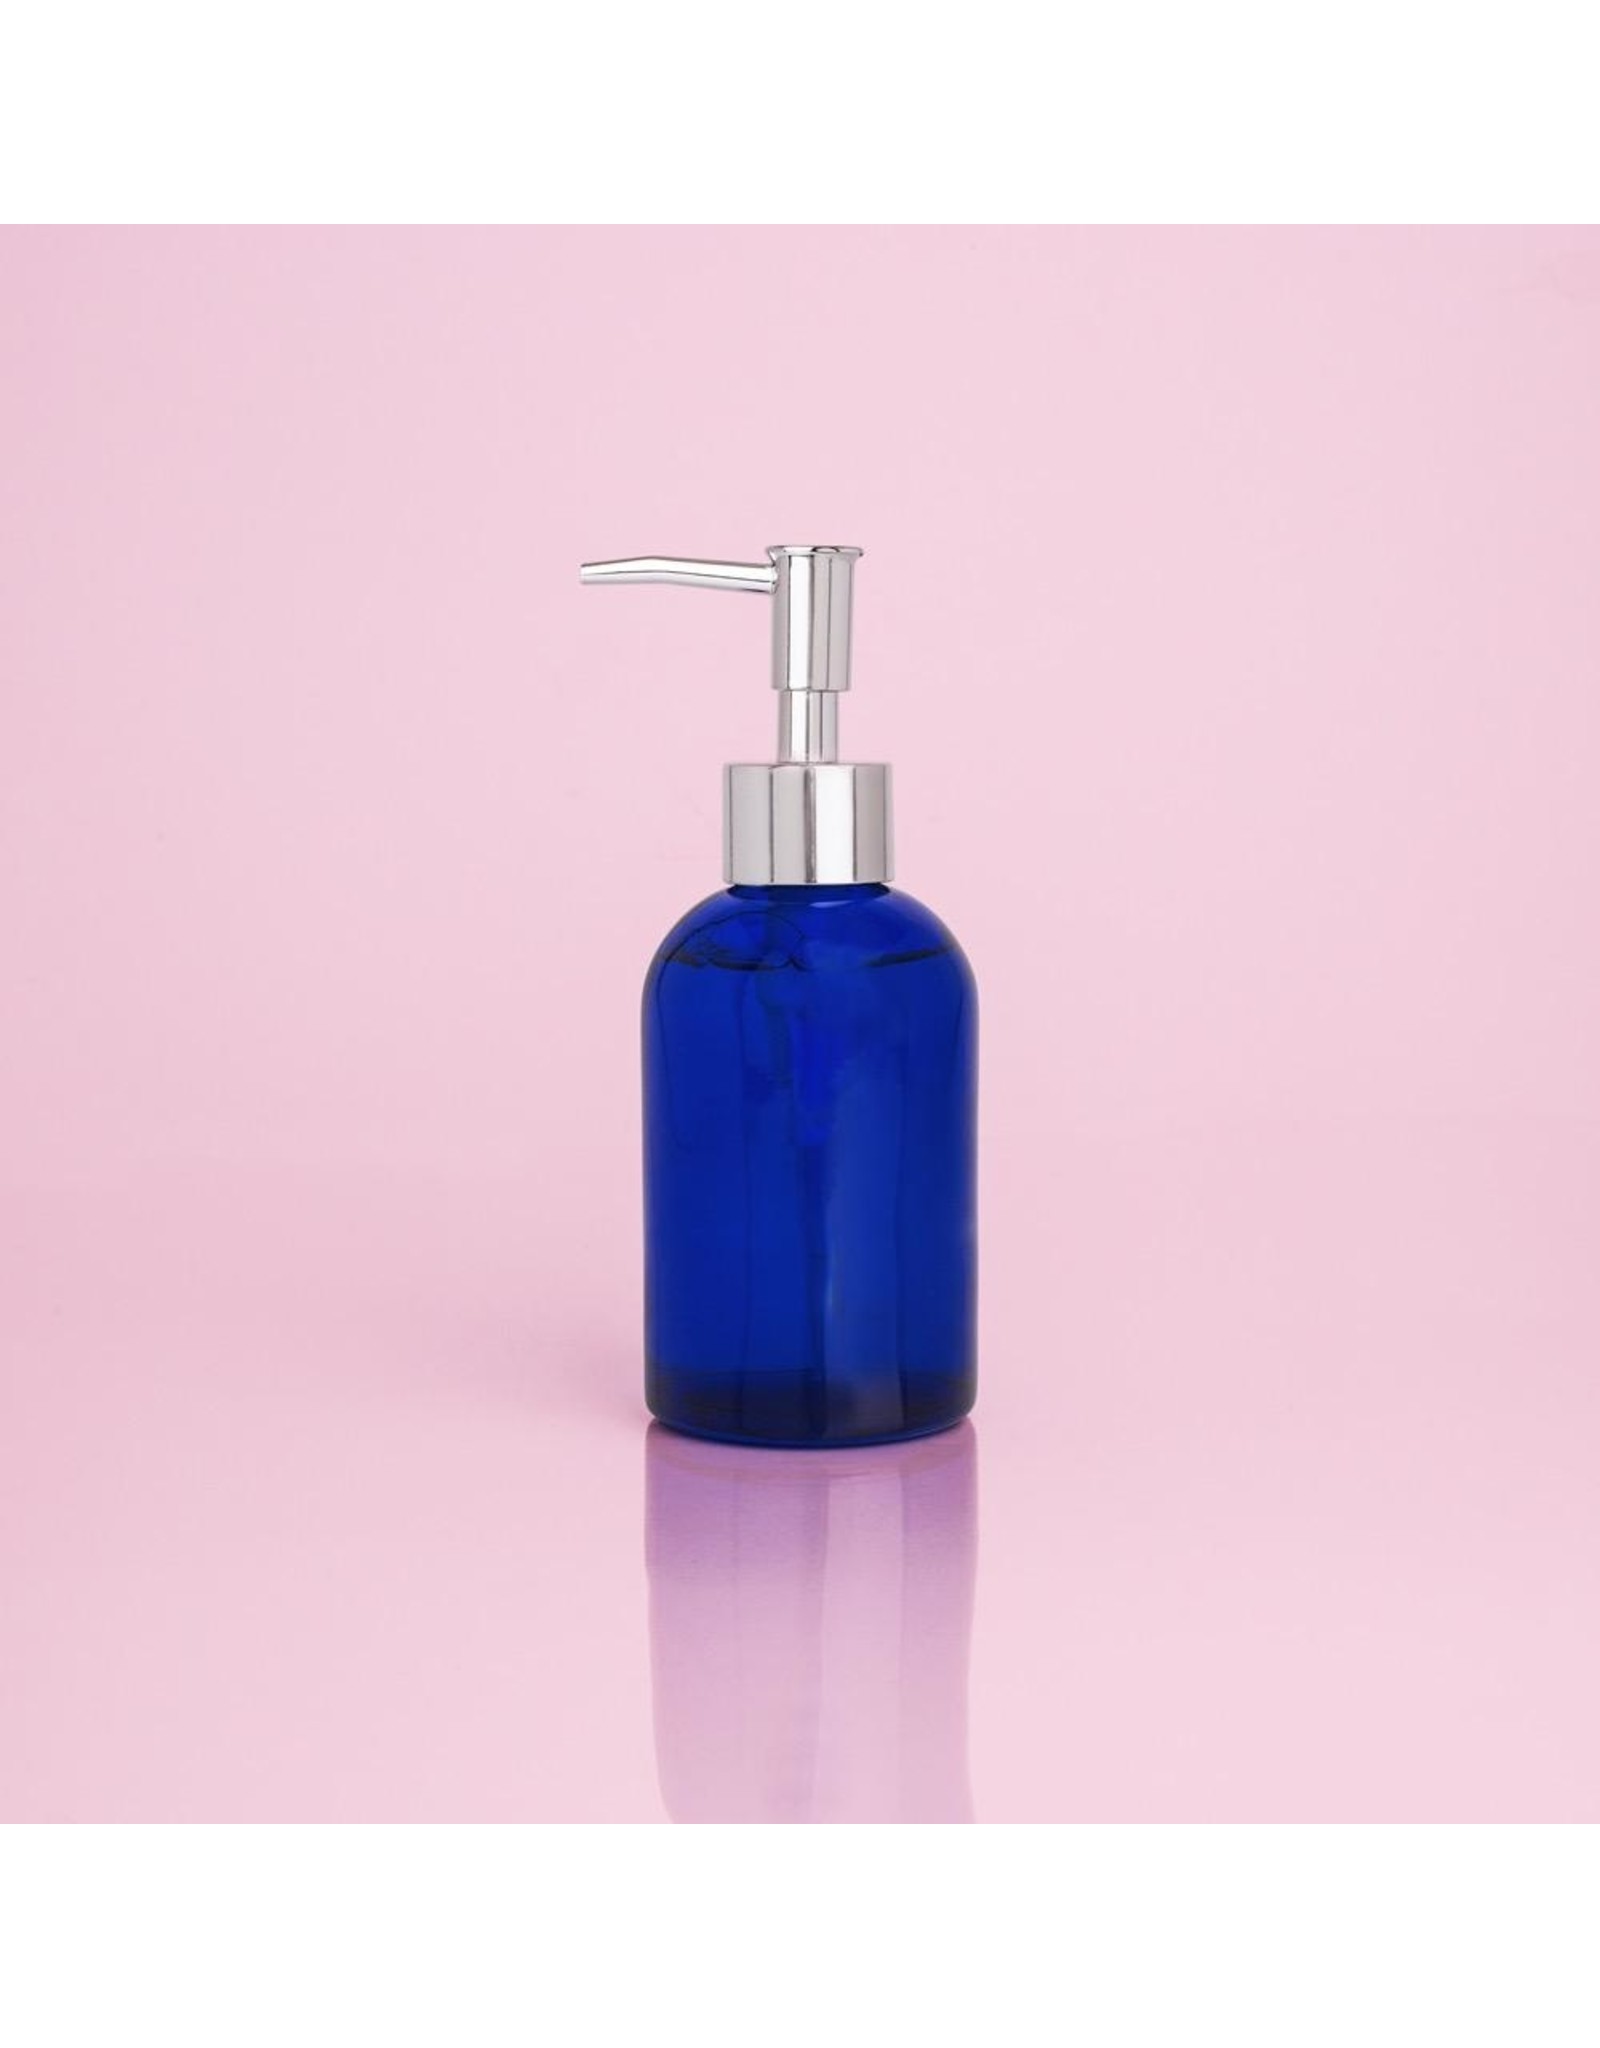 capri BLUE Volcano Hand Wash 6 Oz Glass Bottle W Pump Dispenser